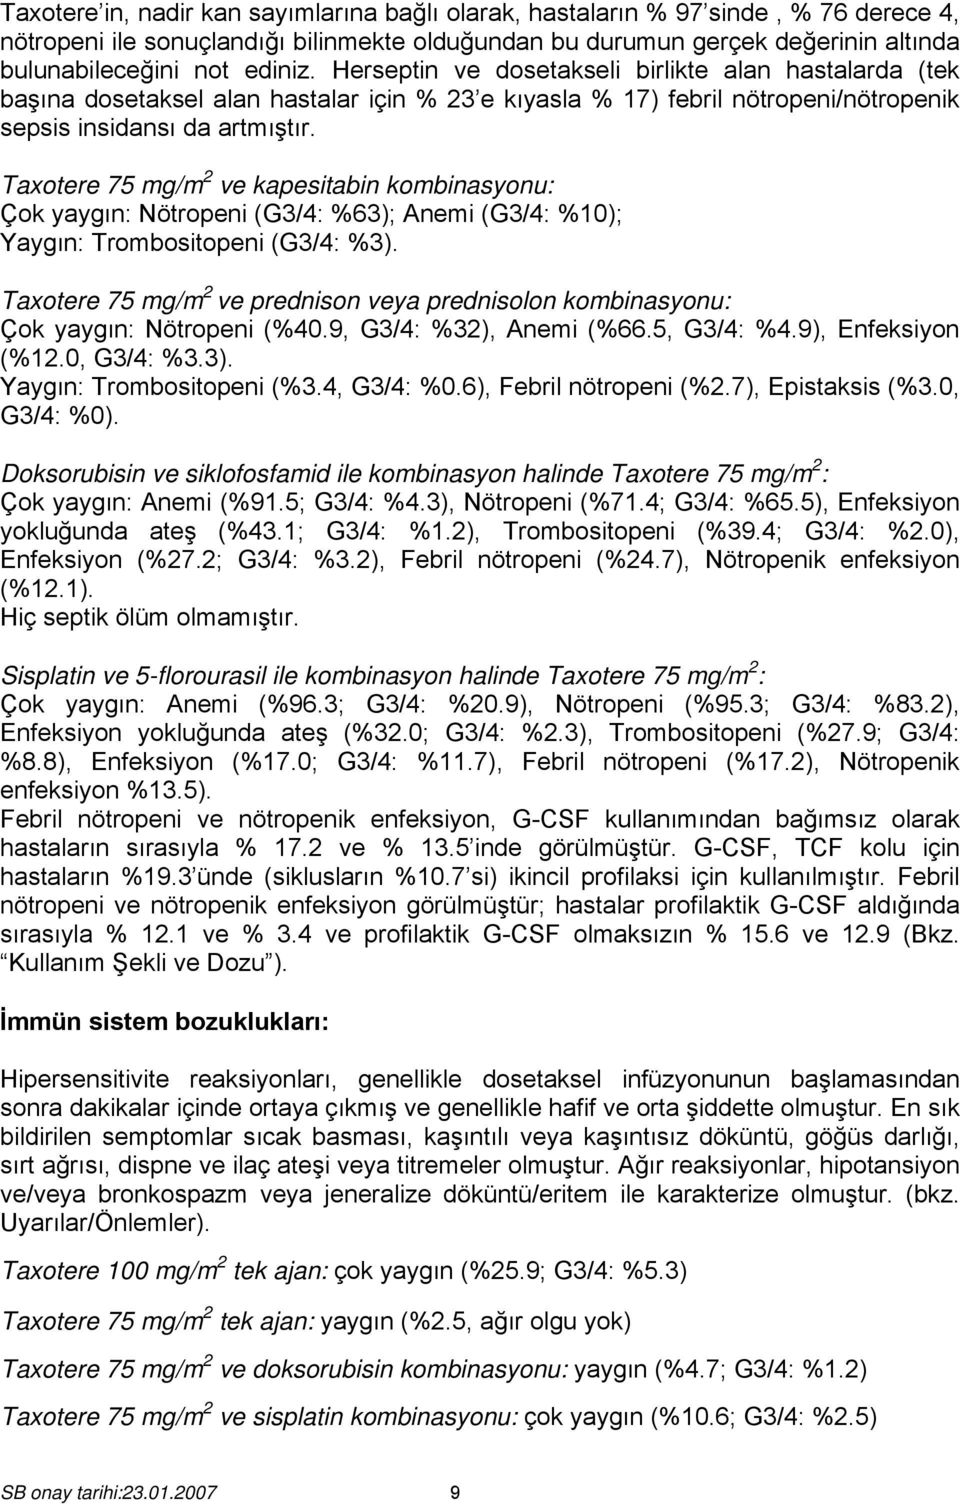 Taxotere 75 mg/m 2 ve kapesitabin kombinasyonu: Çok yaygın: Nötropeni (G3/4: %63); Anemi (G3/4: %10); Yaygın: Trombositopeni (G3/4: %3).